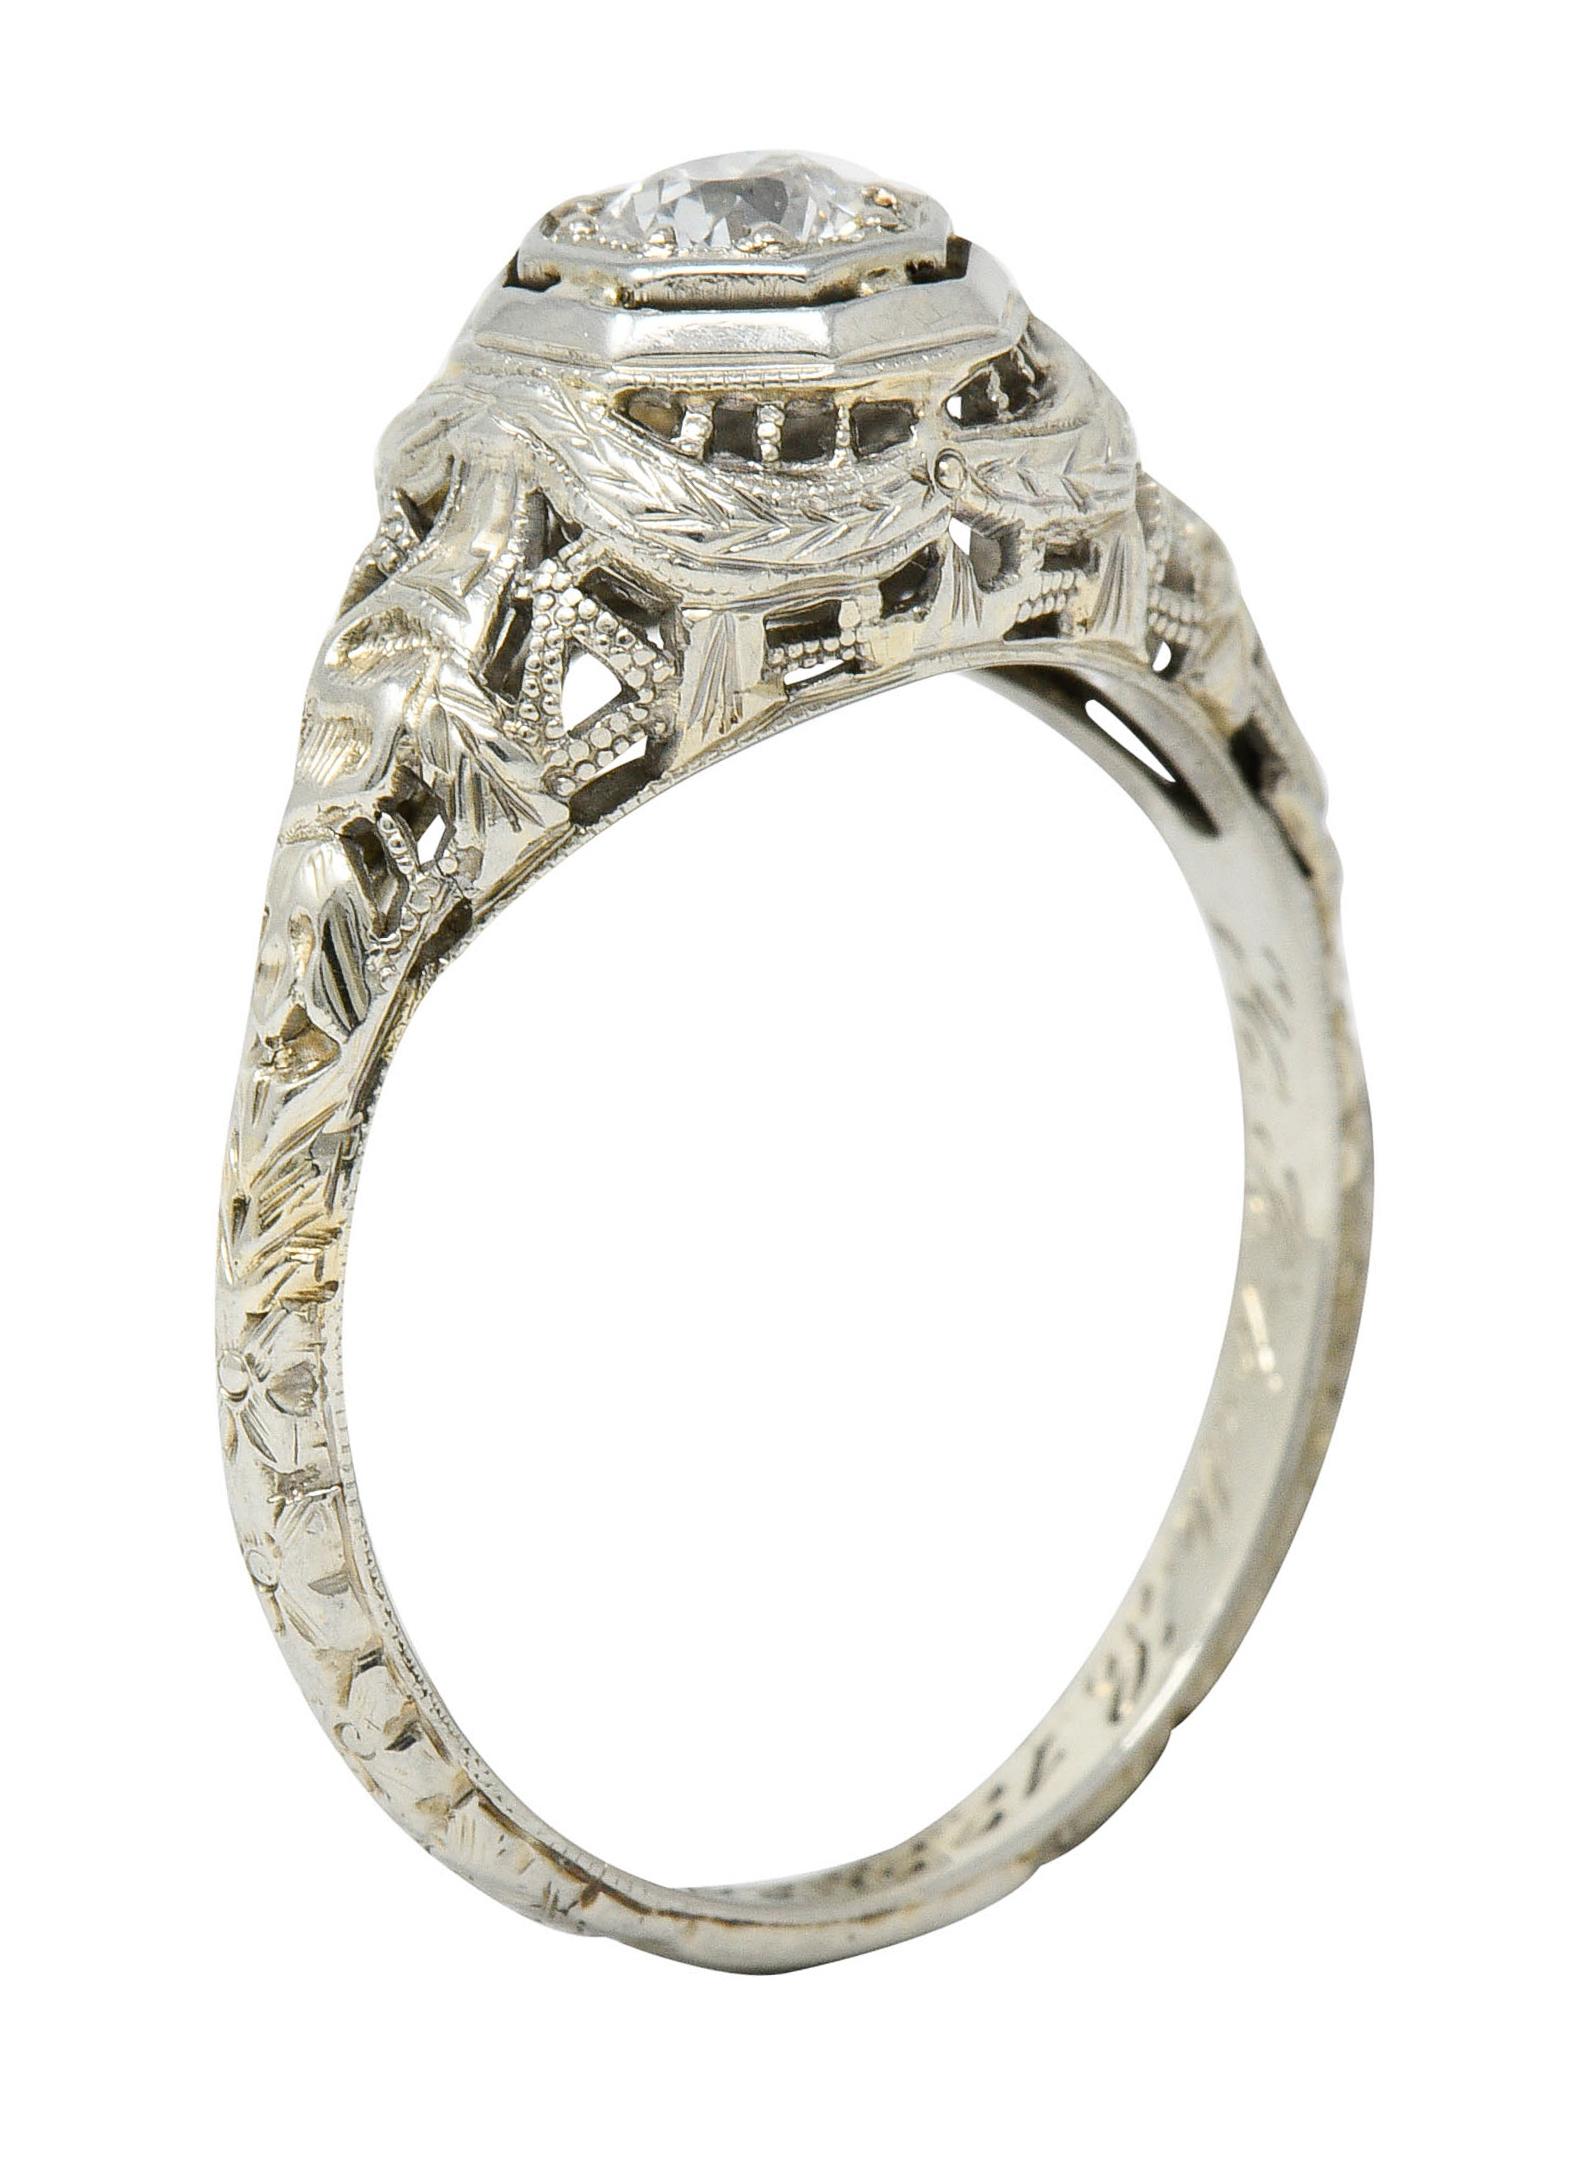 Late Edwardian Diamond 18 Karat White Gold Engagement Ring 4